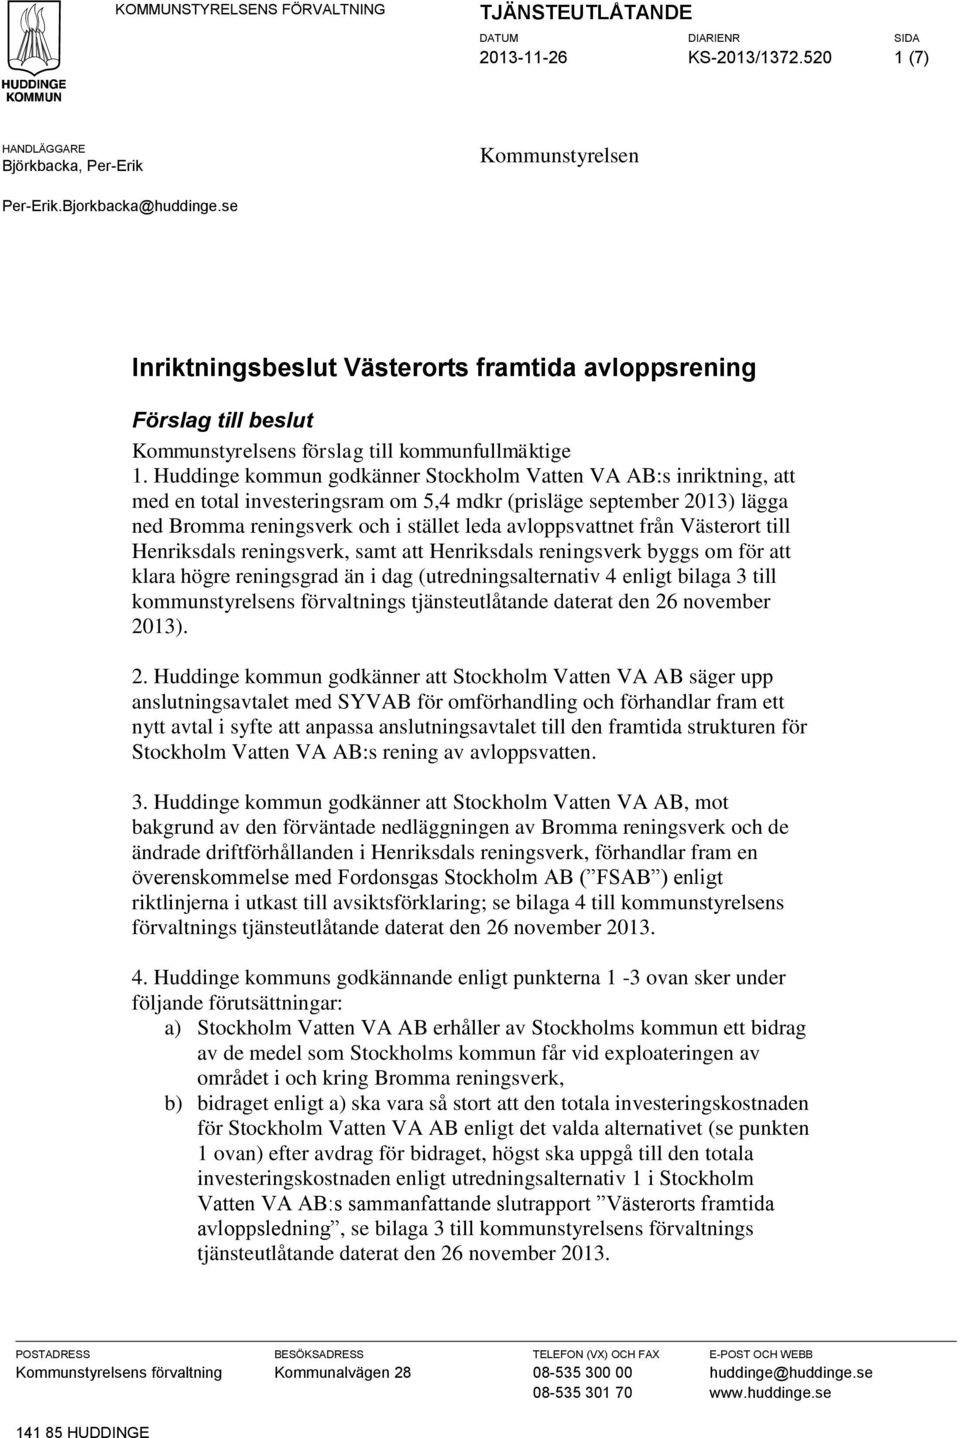 Huddinge kommun godkänner Stockholm Vatten VA AB:s inriktning, att med en total investeringsram om 5,4 mdkr (prisläge september 2013) lägga ned Bromma reningsverk och i stället leda avloppsvattnet